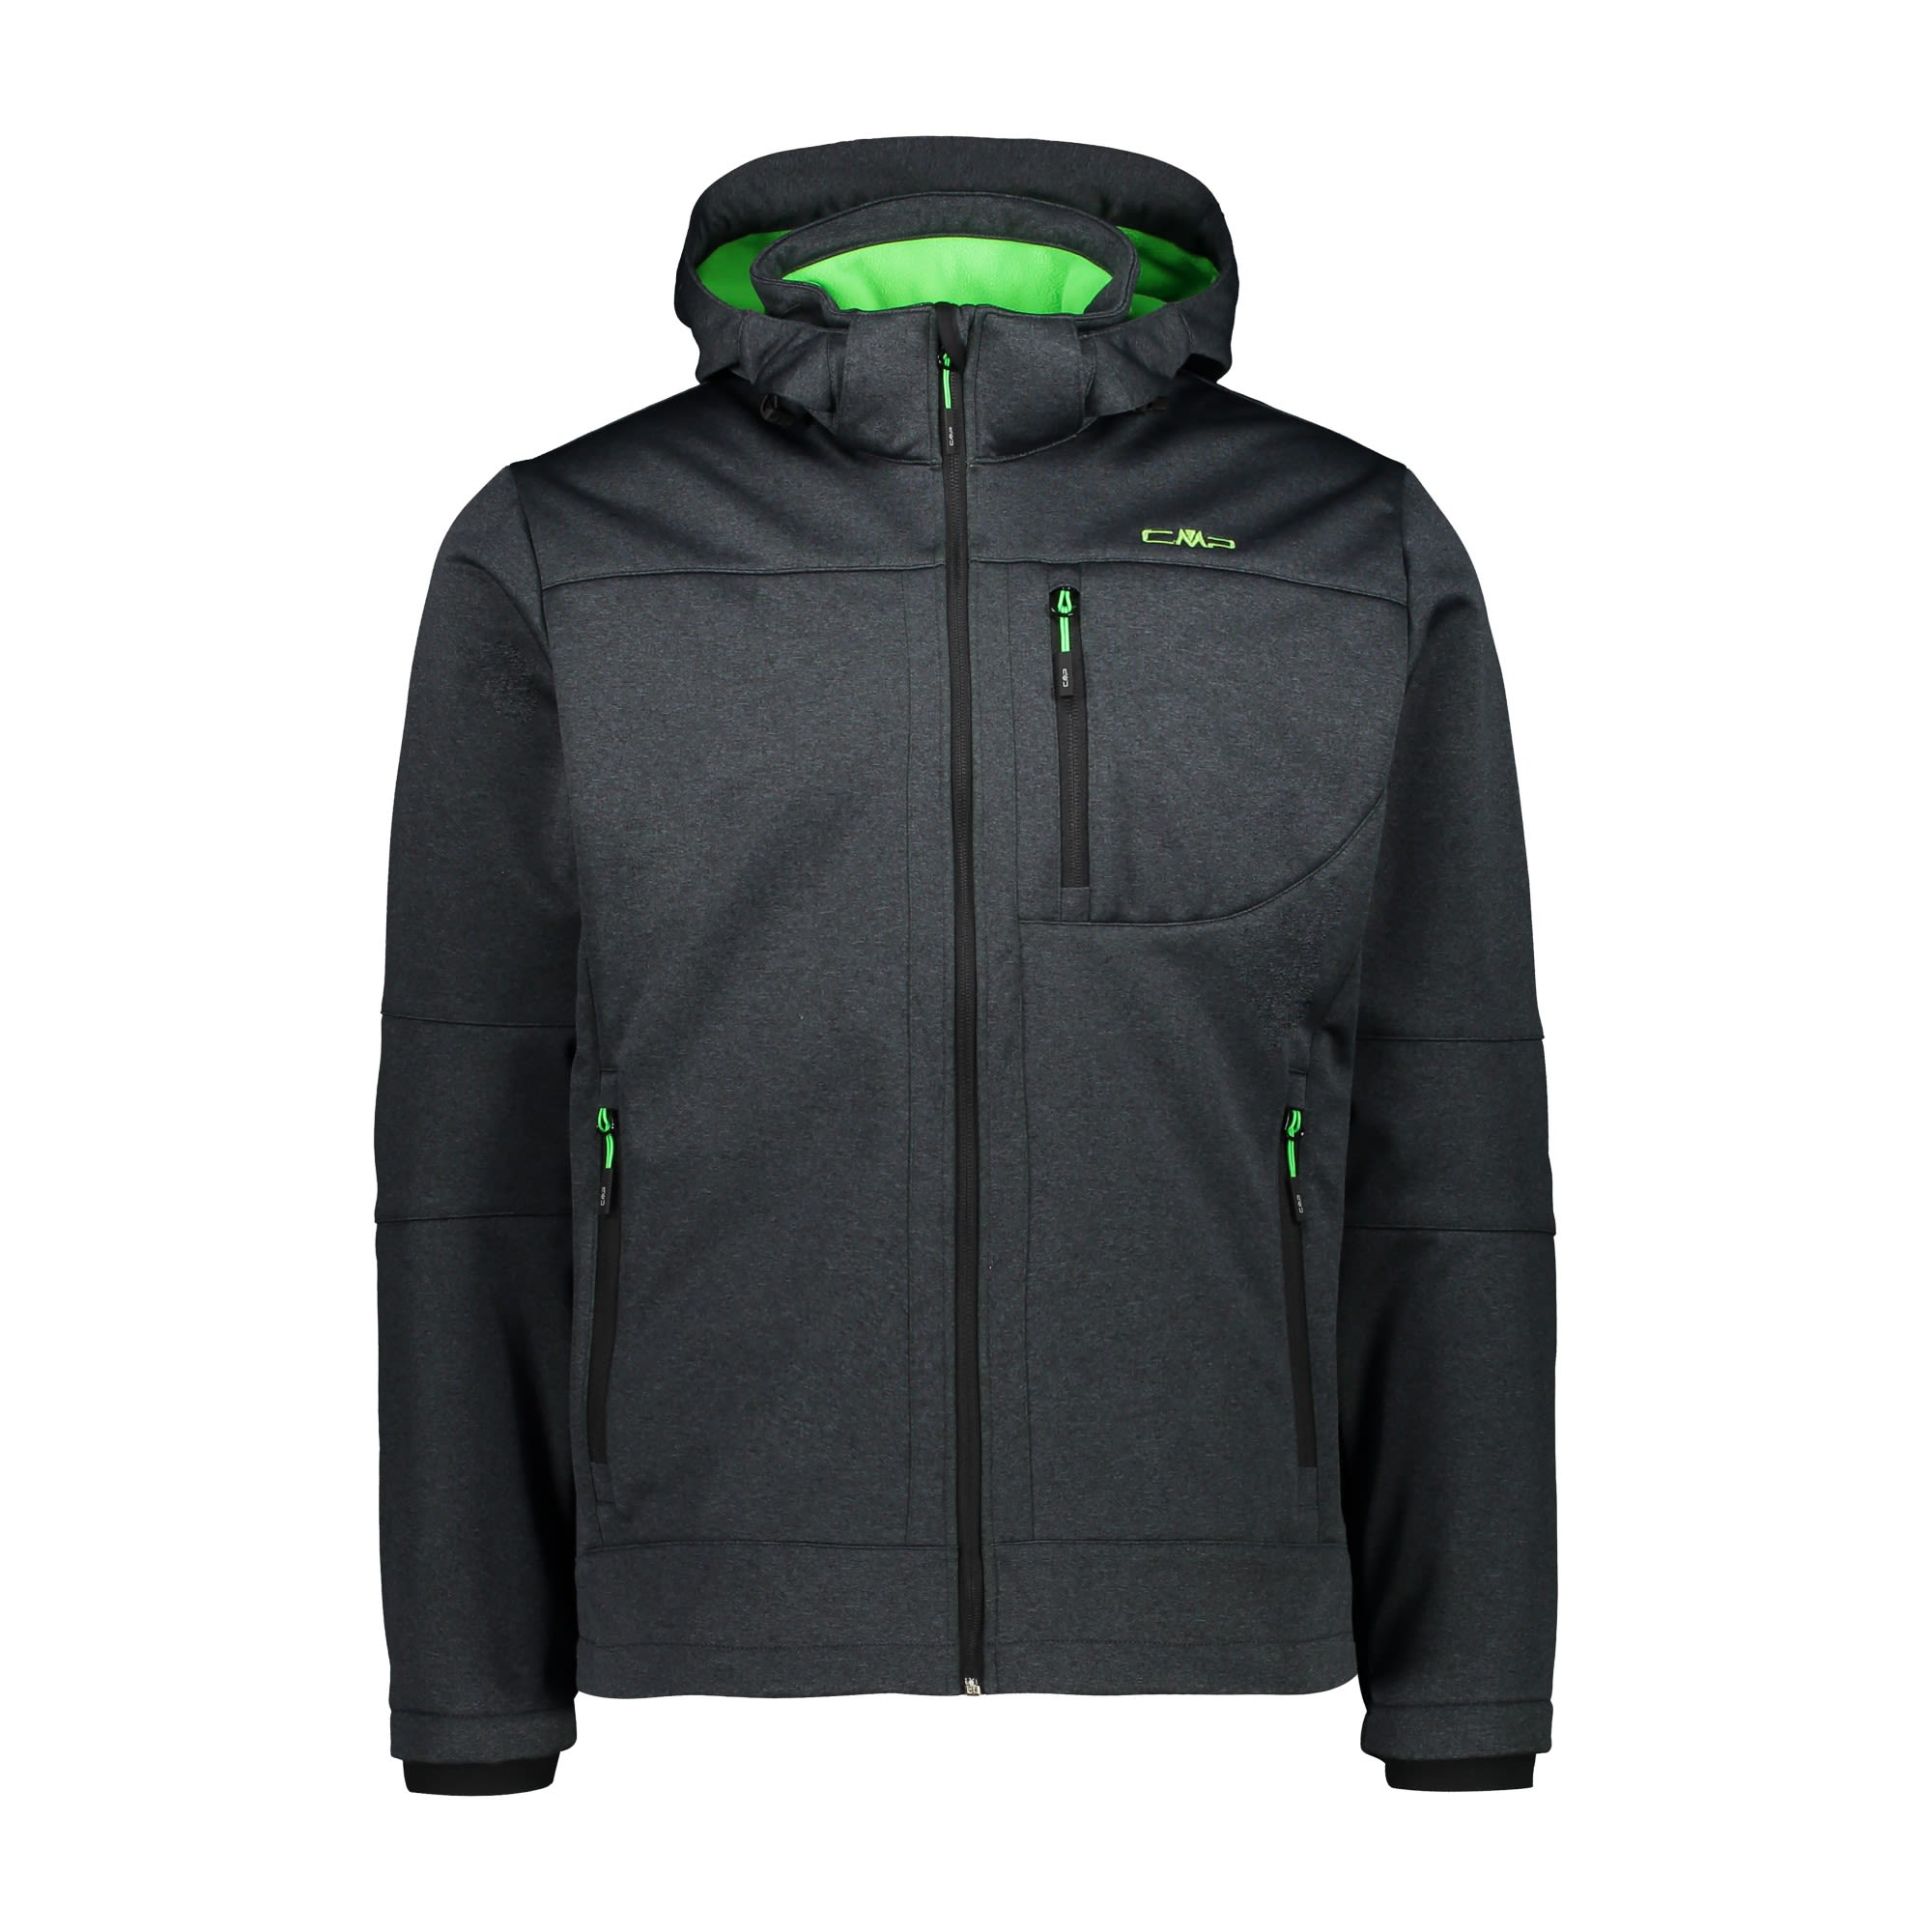 CMP Jacket Zip Hood Softshell Melange Grau- Male Anoraks- Grsse 48 - Farbe Asphalt Melange - Verde Fluo